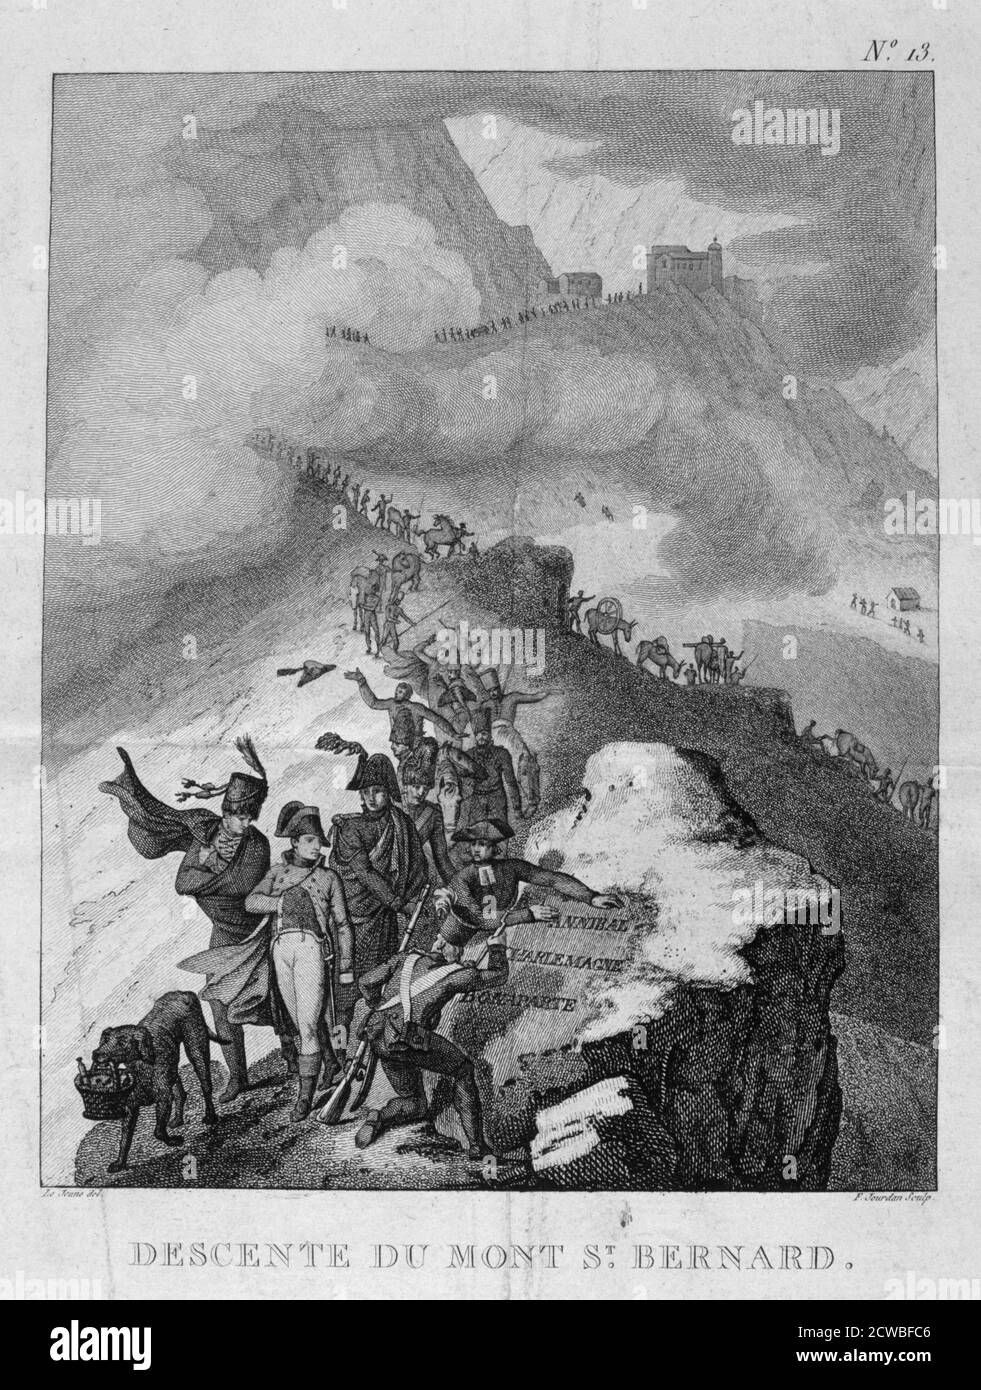 Der Abstieg des Mount St. Bernard', 1800. Nach seiner Ernennung zum ersten Konsul und dem Angriff Österreichs auf Italien durchqueren Napoleon und seine Truppen die Alpen auf den Spuren von Hannibal und Karl dem Großen. Stockfoto